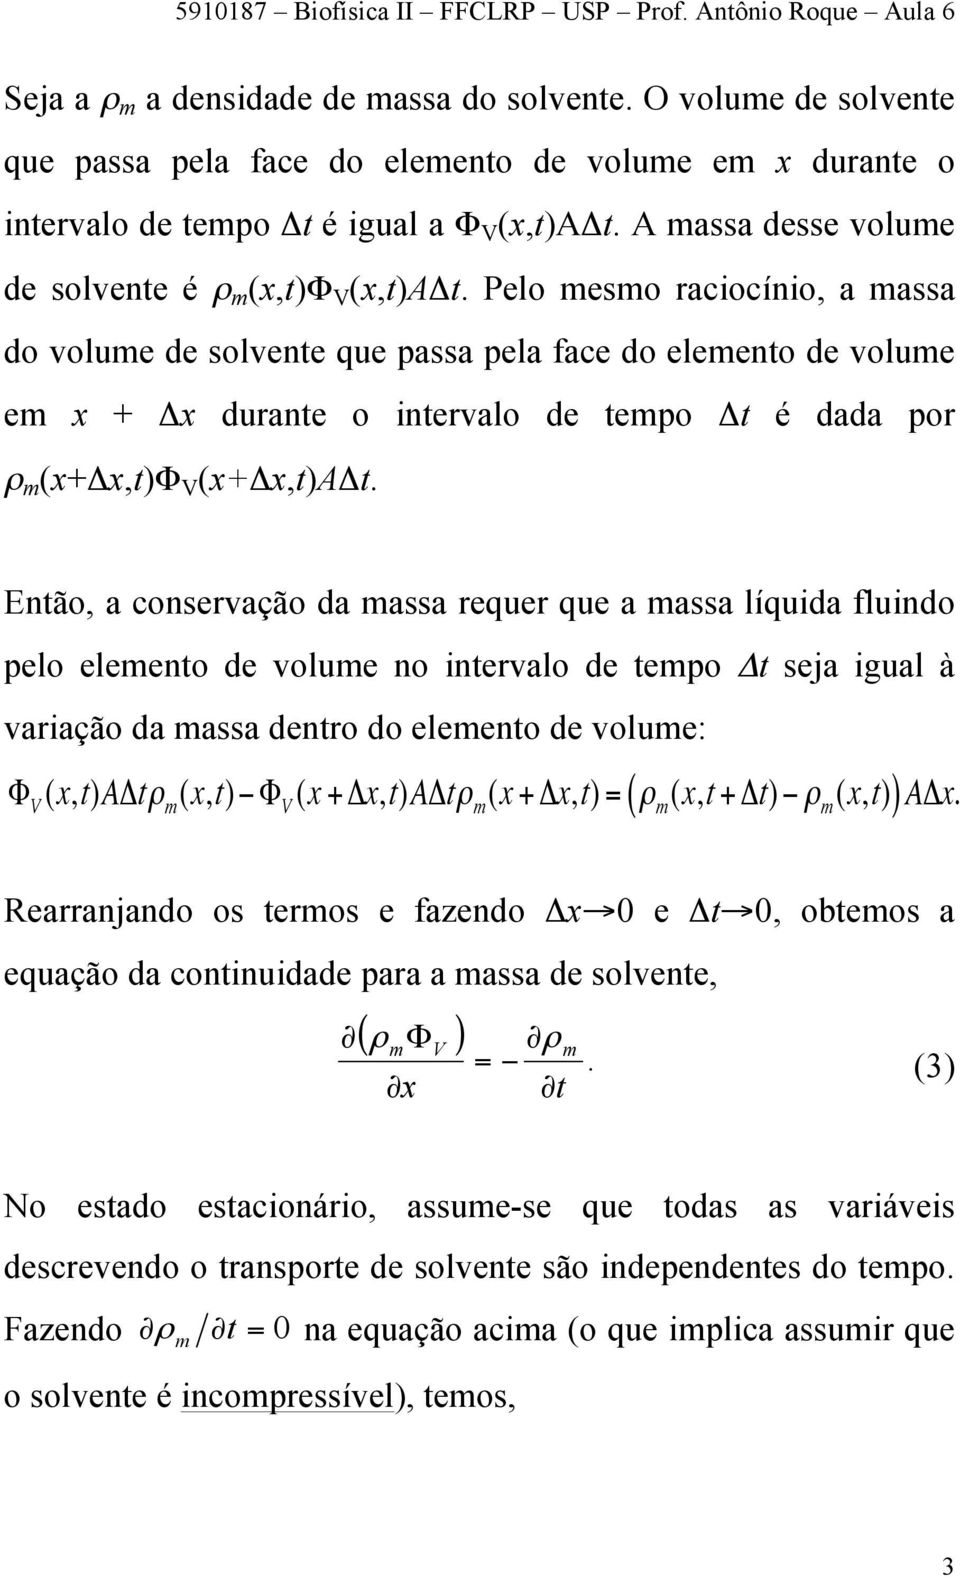 Pelo mesmo rciocínio, mss do volume de solvente que pss pel fce do elemento de volume em x + Δx durnte o intervlo de tempo Δt é dd por ρ m (x+δx,t)φ V (x+δx,t)aδt.